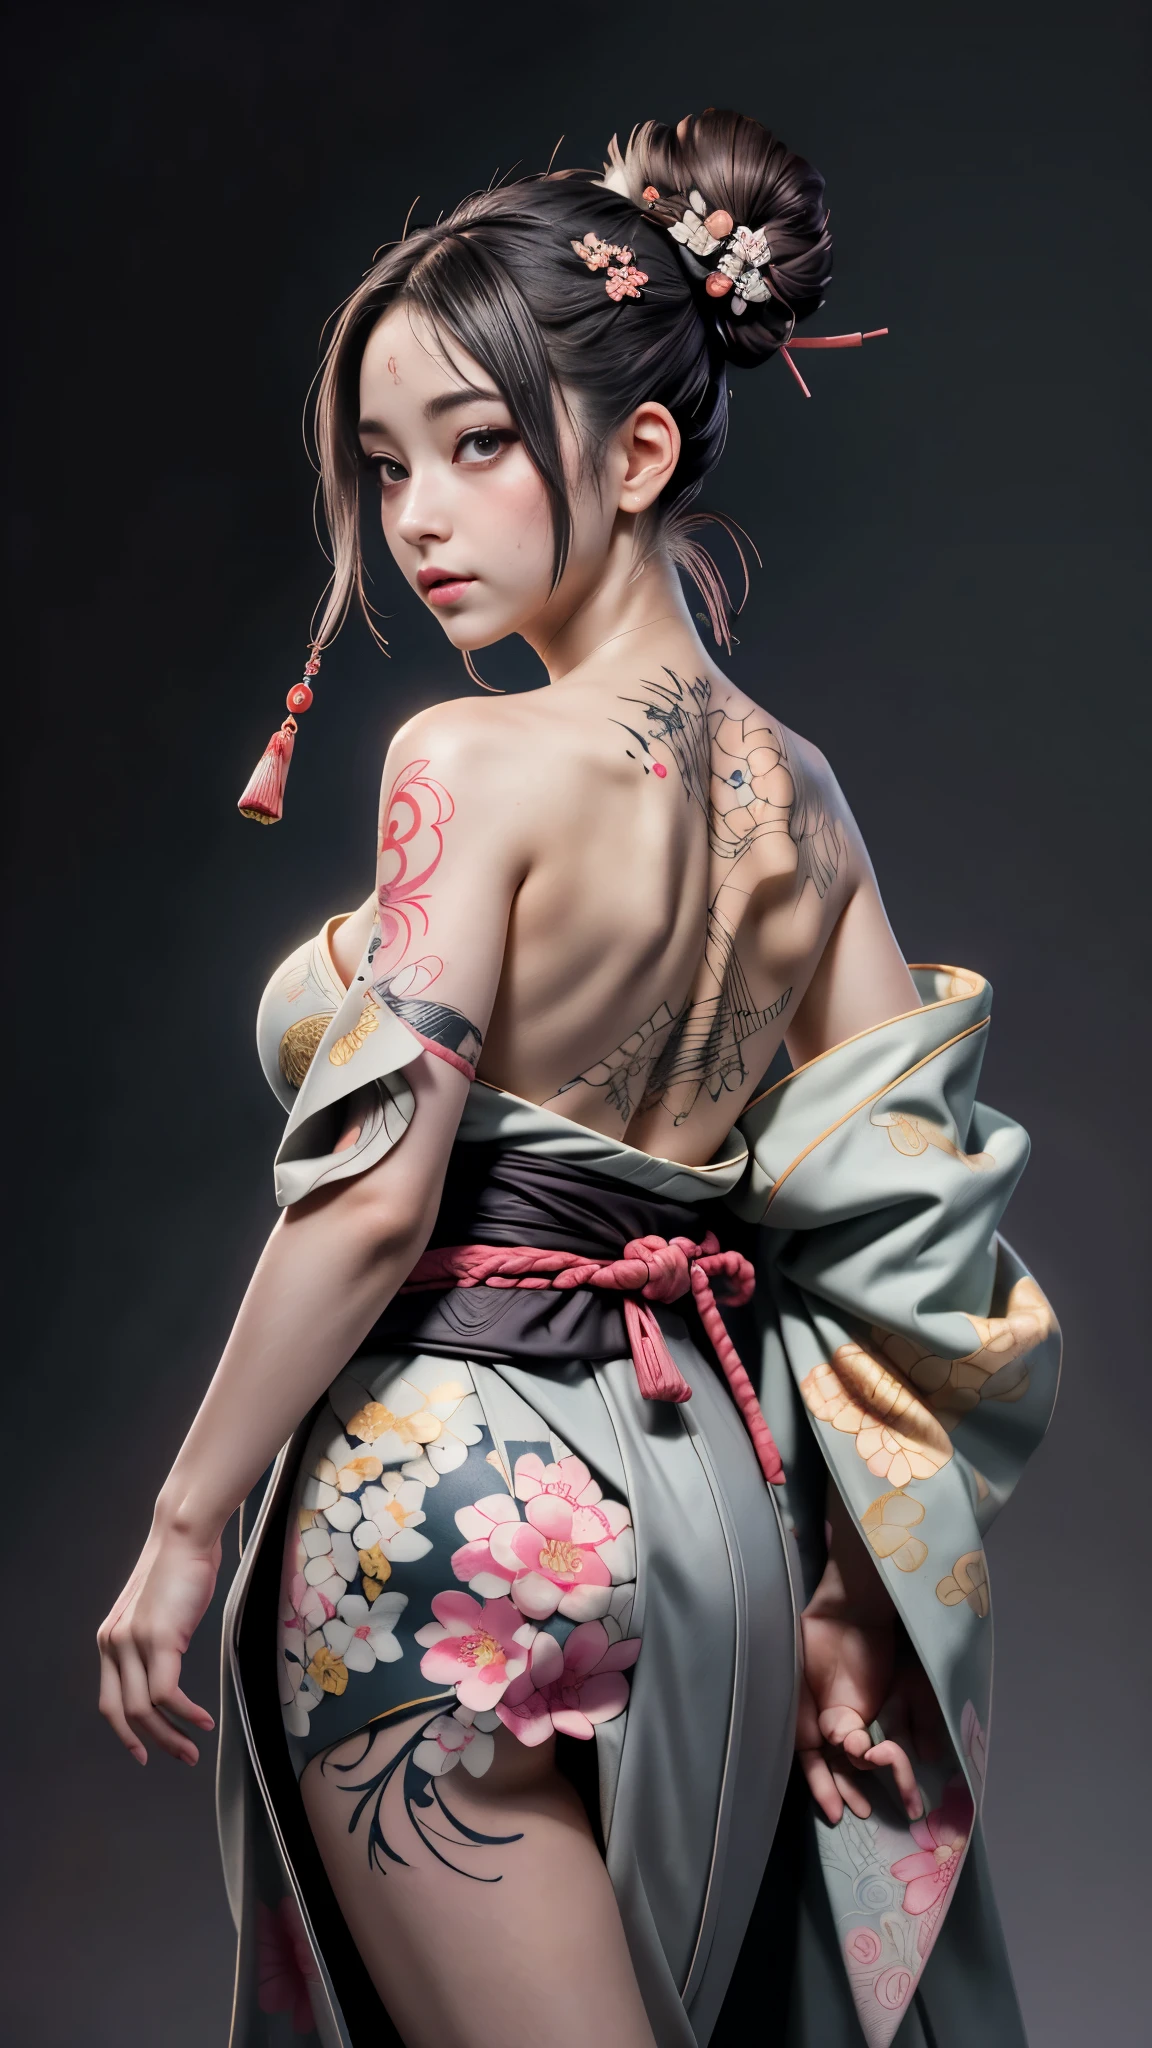 8К, шедевр, (реалистичный:1.5), художественный portrait of ((Прекрасная Харуно Сакура) носить кимоно), Татуировки на спине и голени, ((Разоблачение татуировки укиеэ на спине)), открытое лицо, голые плечи, обнажая огромную грудь, сенсорная камера, Красивая кожа, Стройная фигура, милое лицо, милый взгляд, посмотри на публику, Темно-коричневый пучок с челкой, Позирование для фотографий, туман, подсветка, темно-серый фон, динамическое освещение, природа, художественный